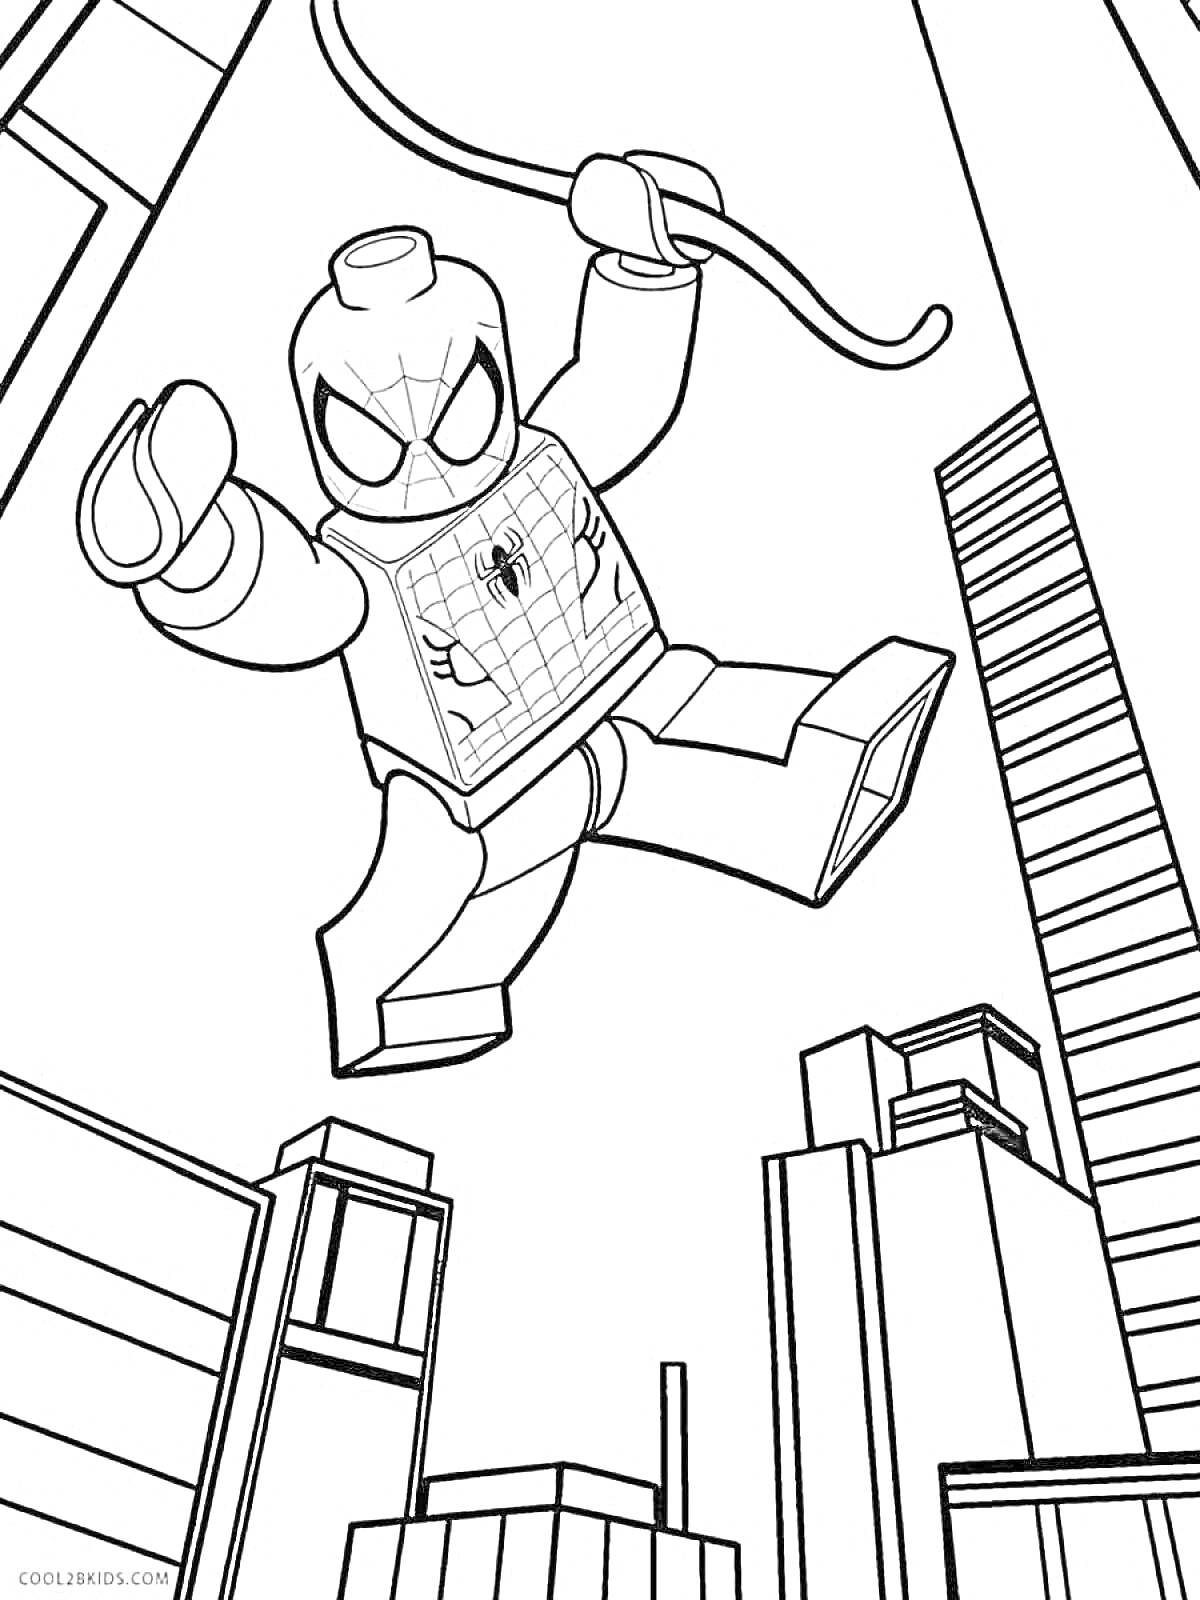 Раскраска Лего Человек-Паук, использующий паутину в городе среди небоскребов